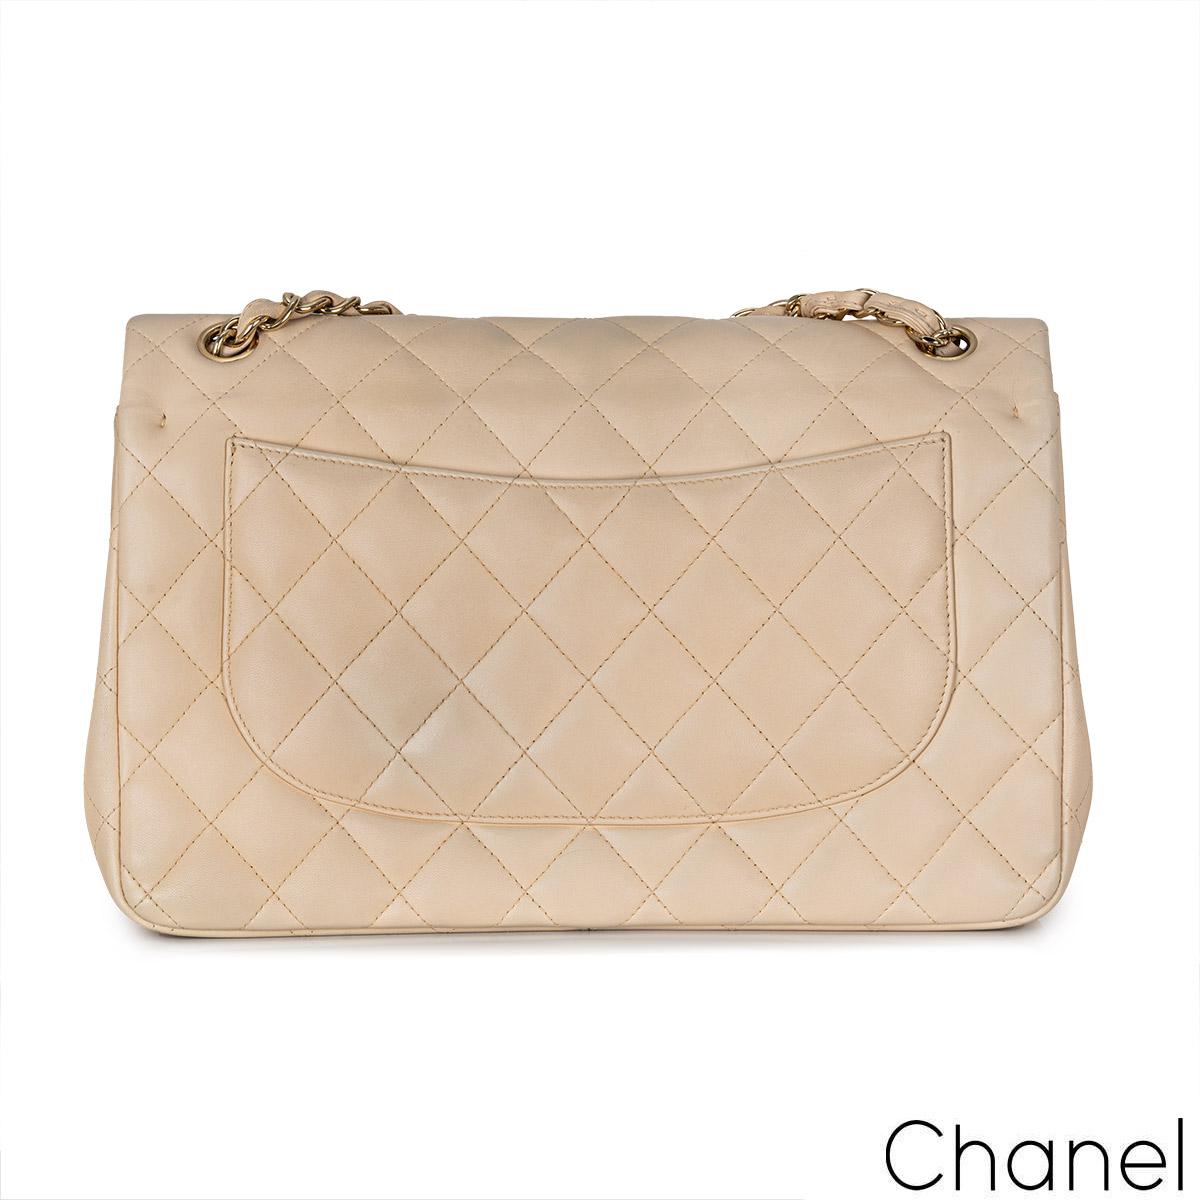 Eine herrliche Chanel Jumbo Classic Double Flap Handtasche. Das Äußere dieses Jumbo-Klassikers besteht aus gestepptem beigem Lammleder mit goldfarbener Hardware. Sie verfügt über eine Frontklappe mit dem charakteristischen CC-Drehverschluss, ein